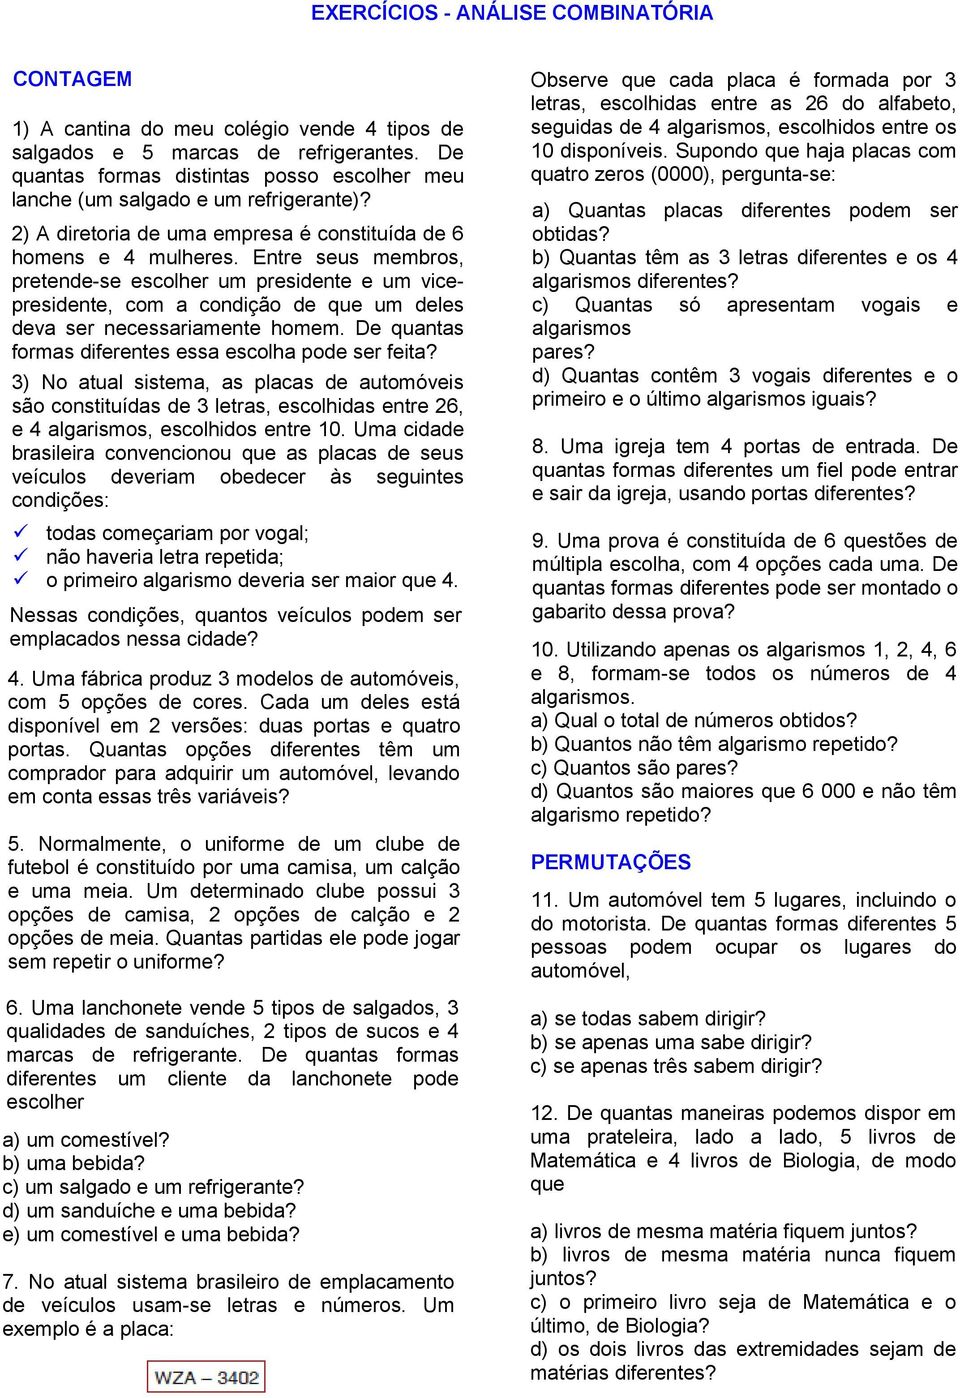 EXERCÍCIOS - ANÁLISE COMBINATÓRIA - PDF Download grátis